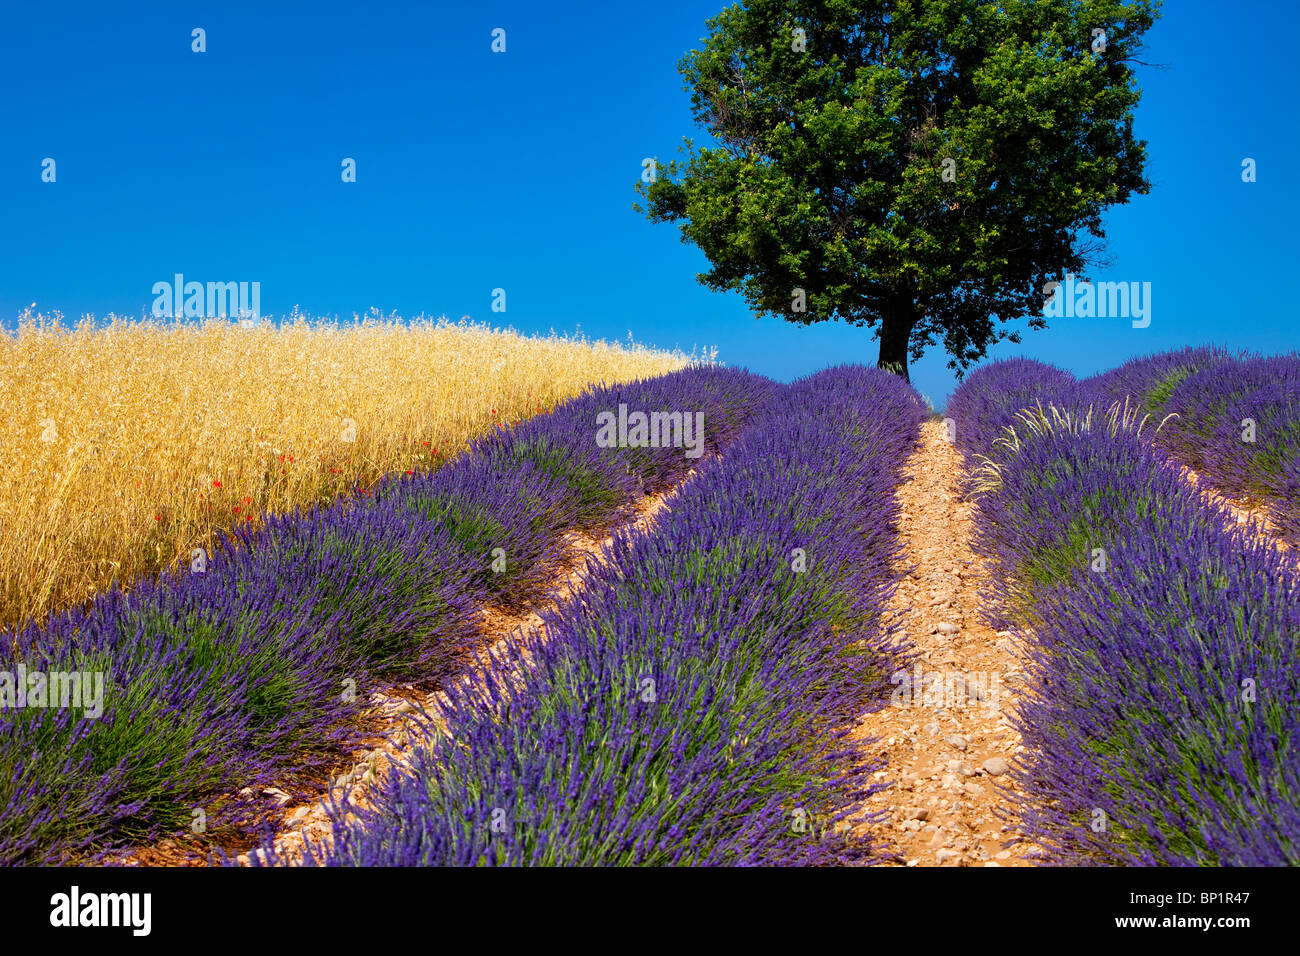 Einsamer Baum in einem Feld von Lavendel in der Nähe von Valensole, Provence Frankreich Stockfoto